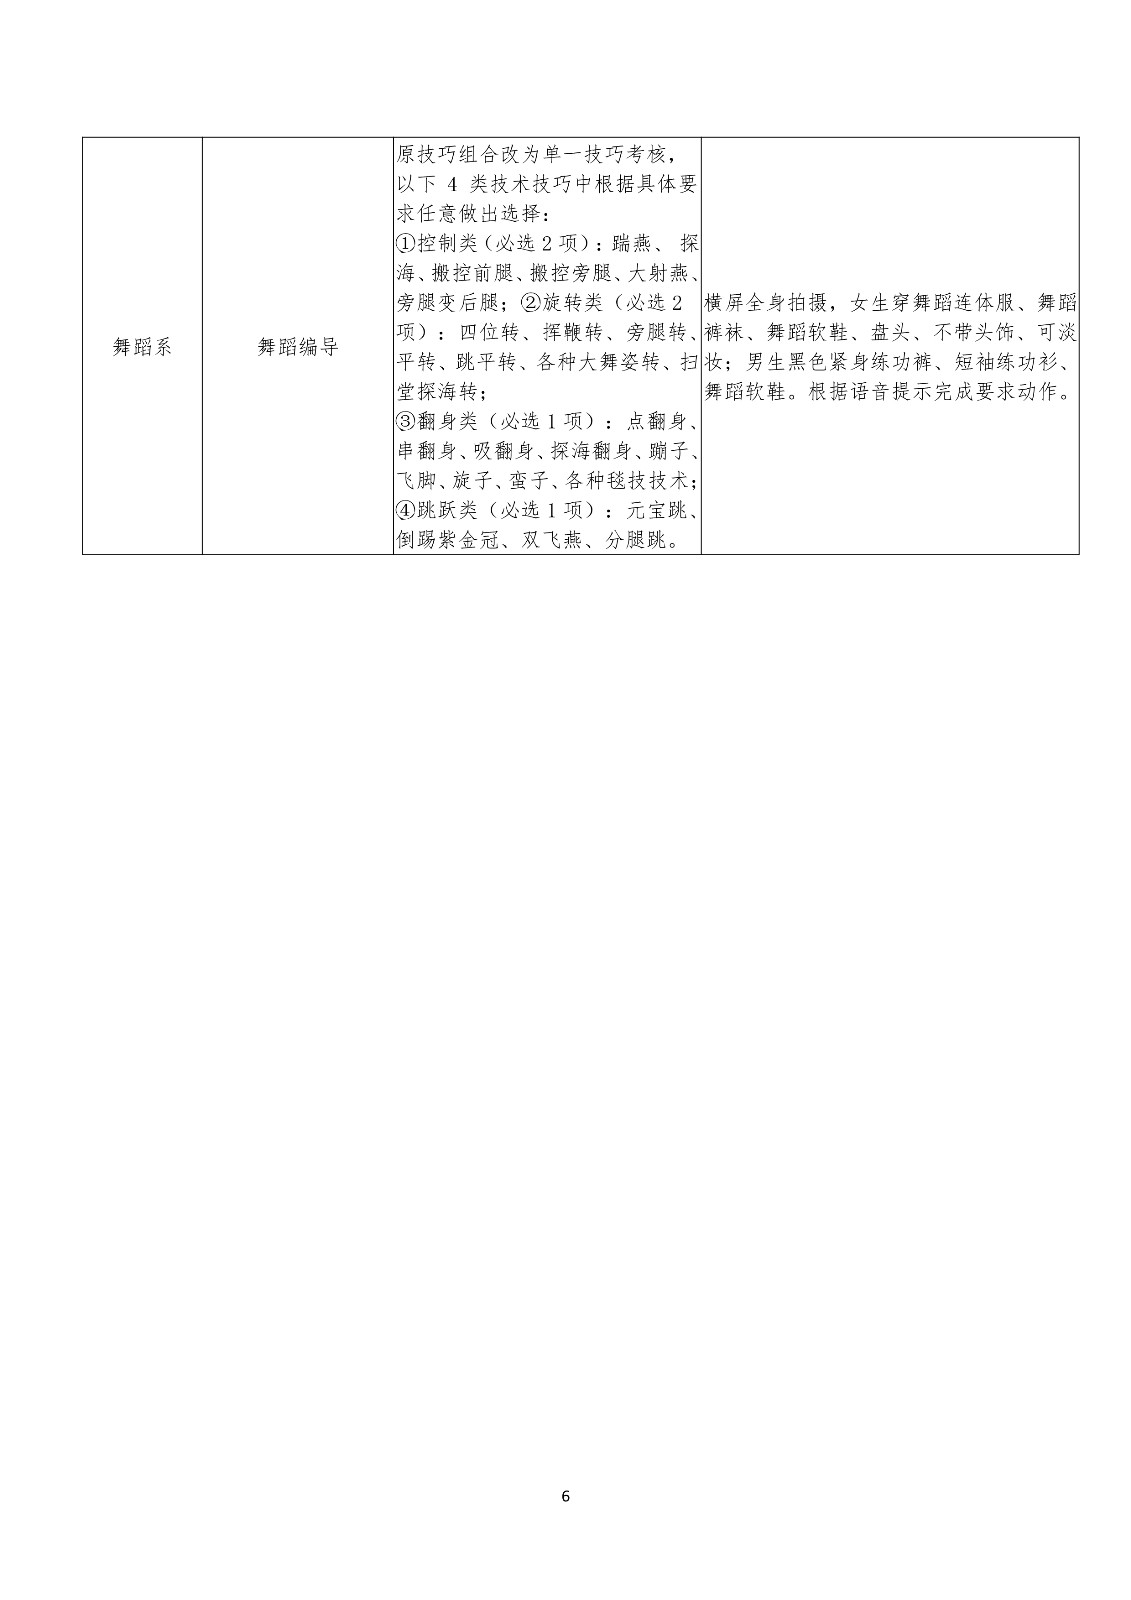 武汉音乐学院2020年普通本科招生初试视频考试办法